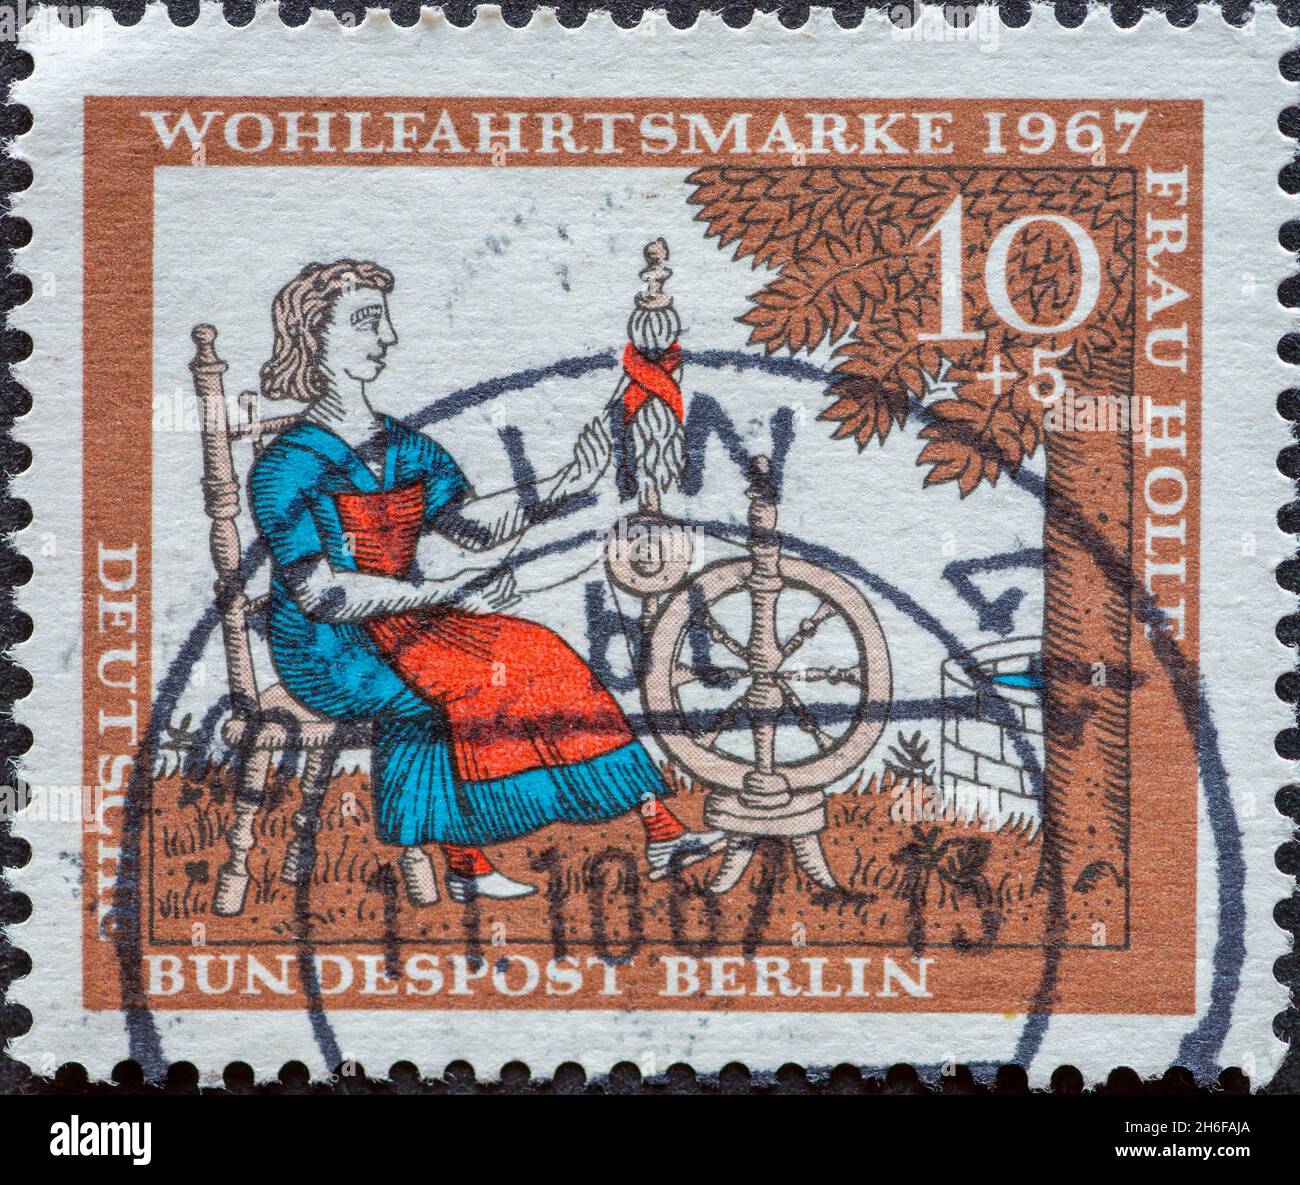 DEUTSCHLAND, Berlin - UM 1967: Eine Briefmarke aus Deutschland, Berlin mit einem Bild aus dem Märchen der Brüder Grimm: Frau Holle. Auf dem spi Stockfoto